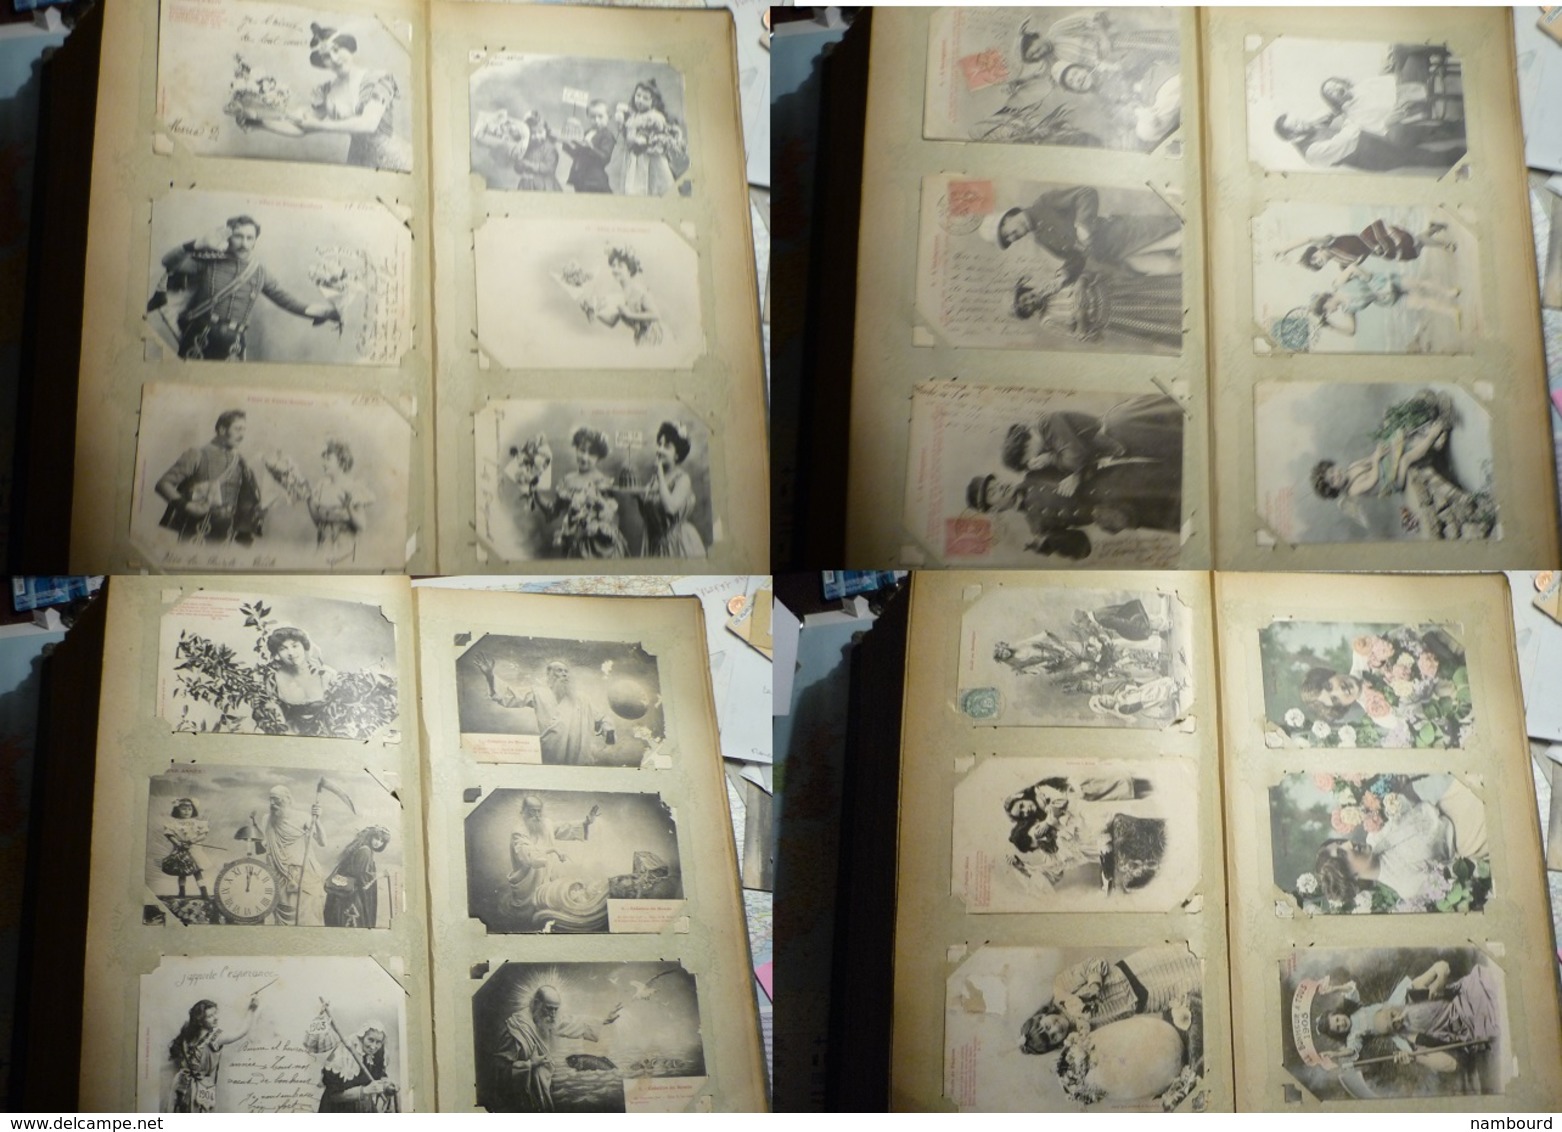 Lot de 696 cartes fantaisie Bergeret dans un gros album ancien de 232 pages